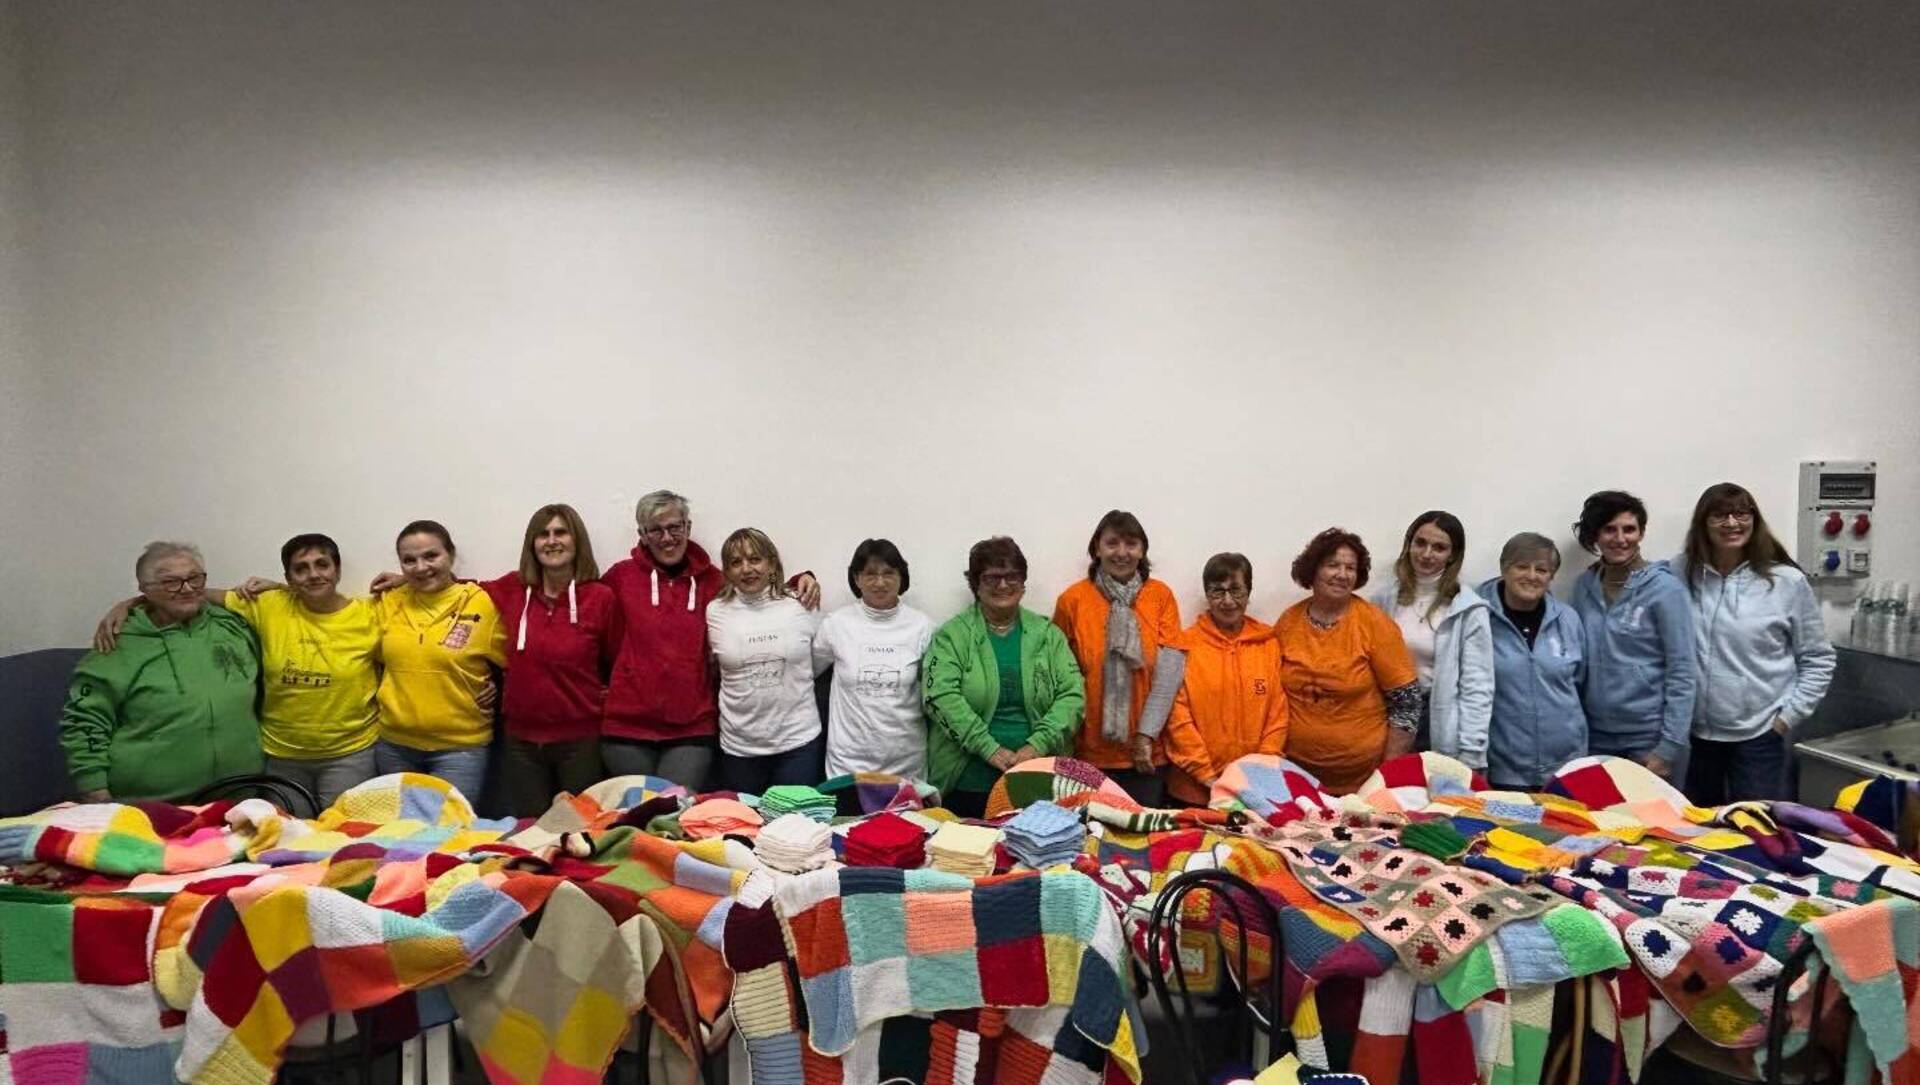 Solidarietà creativa: i rioni di Gerenzano creano 35 coperte multicolore per i senzatetto